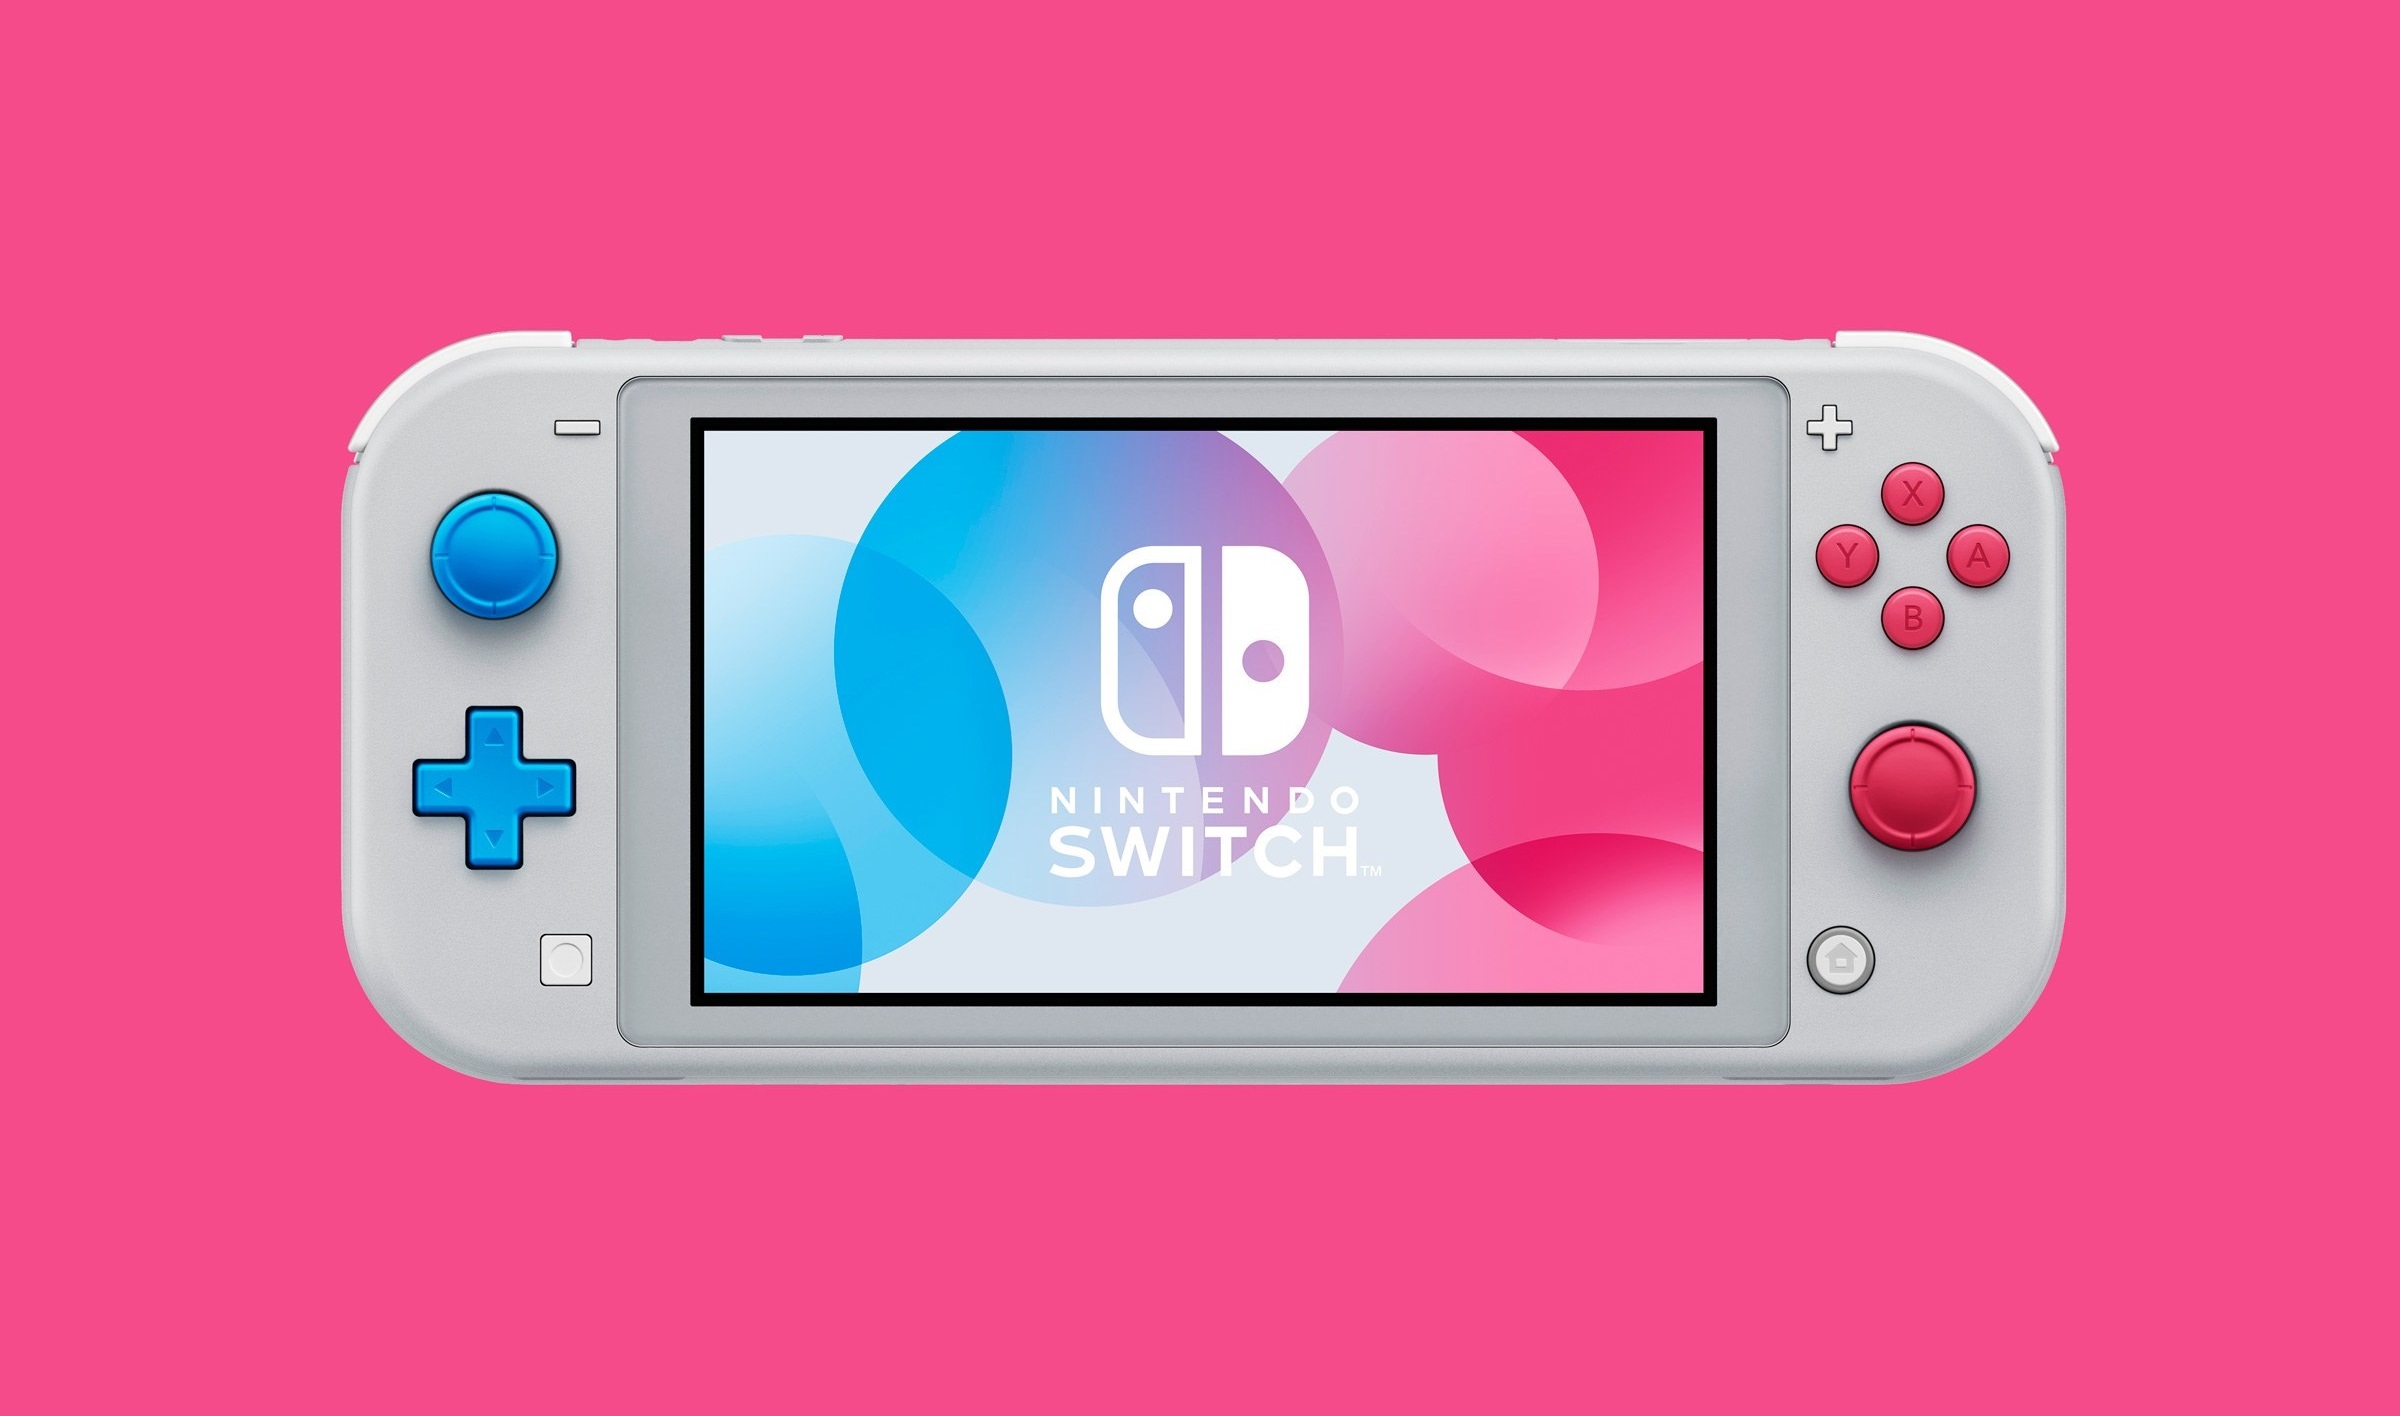 nintendo switch pro release date 2020